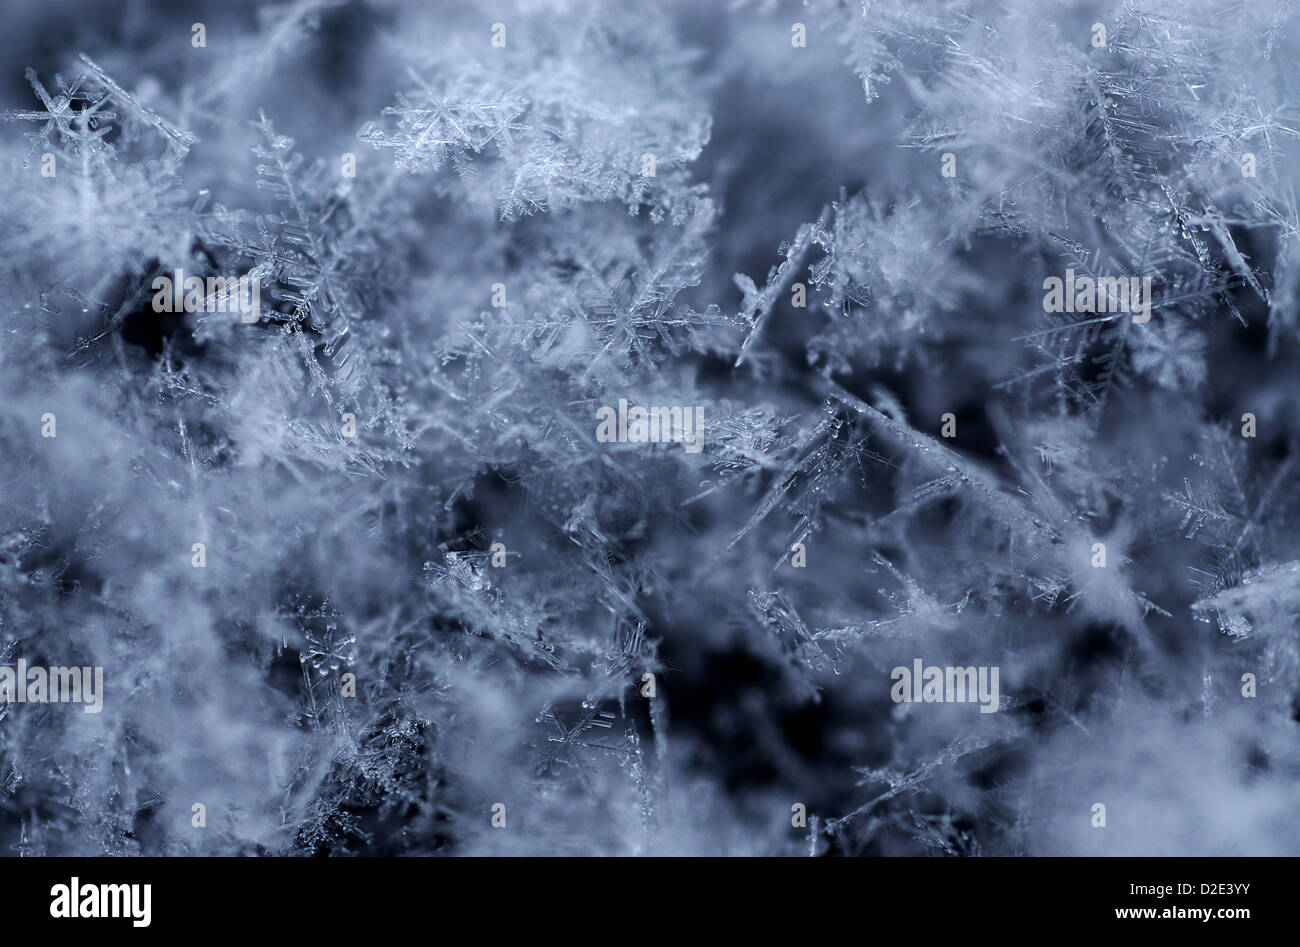 Berlin - Les cristaux de glace de neige fraîchement tombée Banque D'Images